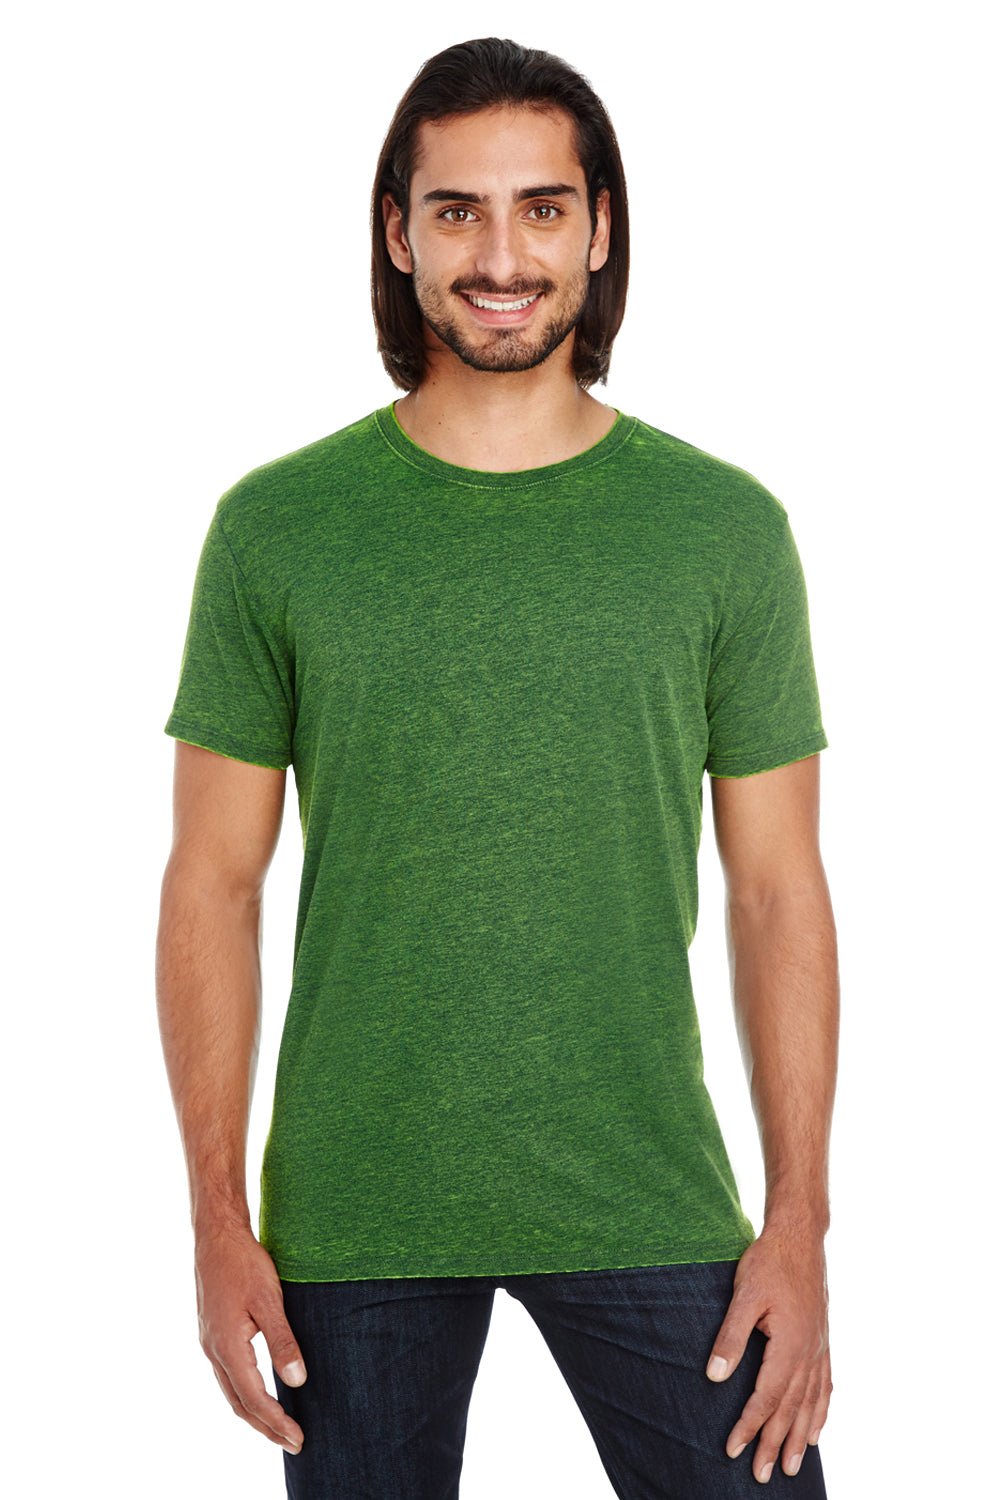 Threadfast Apparel 115A Mens Cross Dye Short Sleeve Crewneck T-Shirt Emerald Green Front